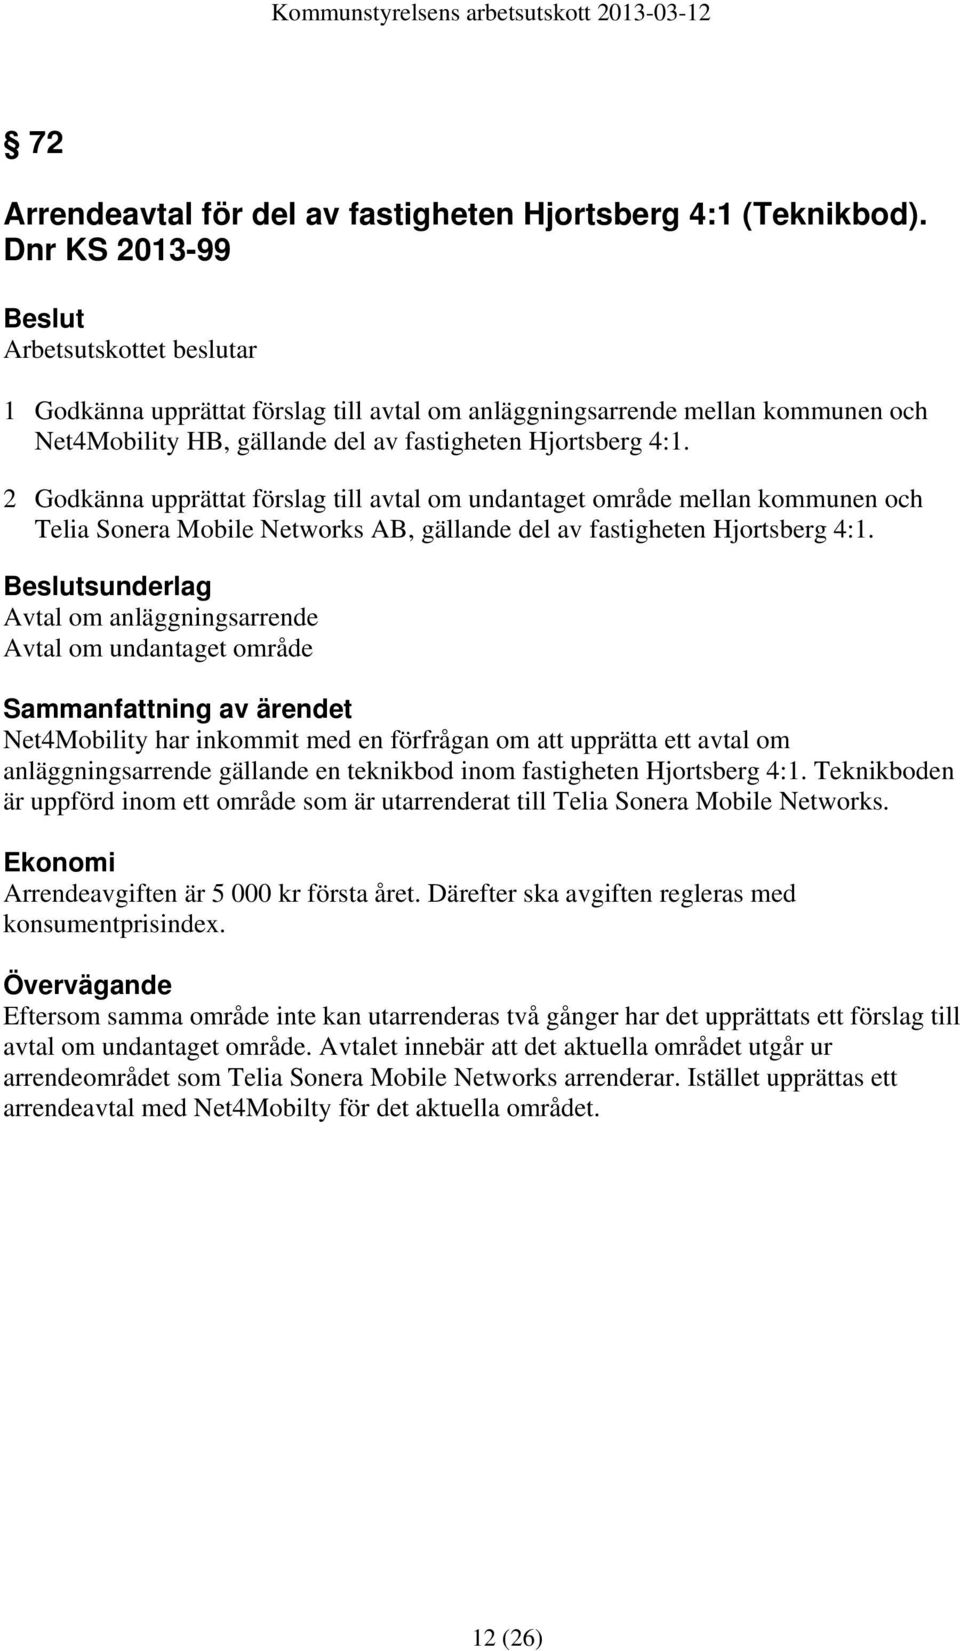 2 Godkänna upprättat förslag till avtal om undantaget område mellan kommunen och Telia Sonera Mobile Networks AB, gällande del av fastigheten Hjortsberg 4:1.